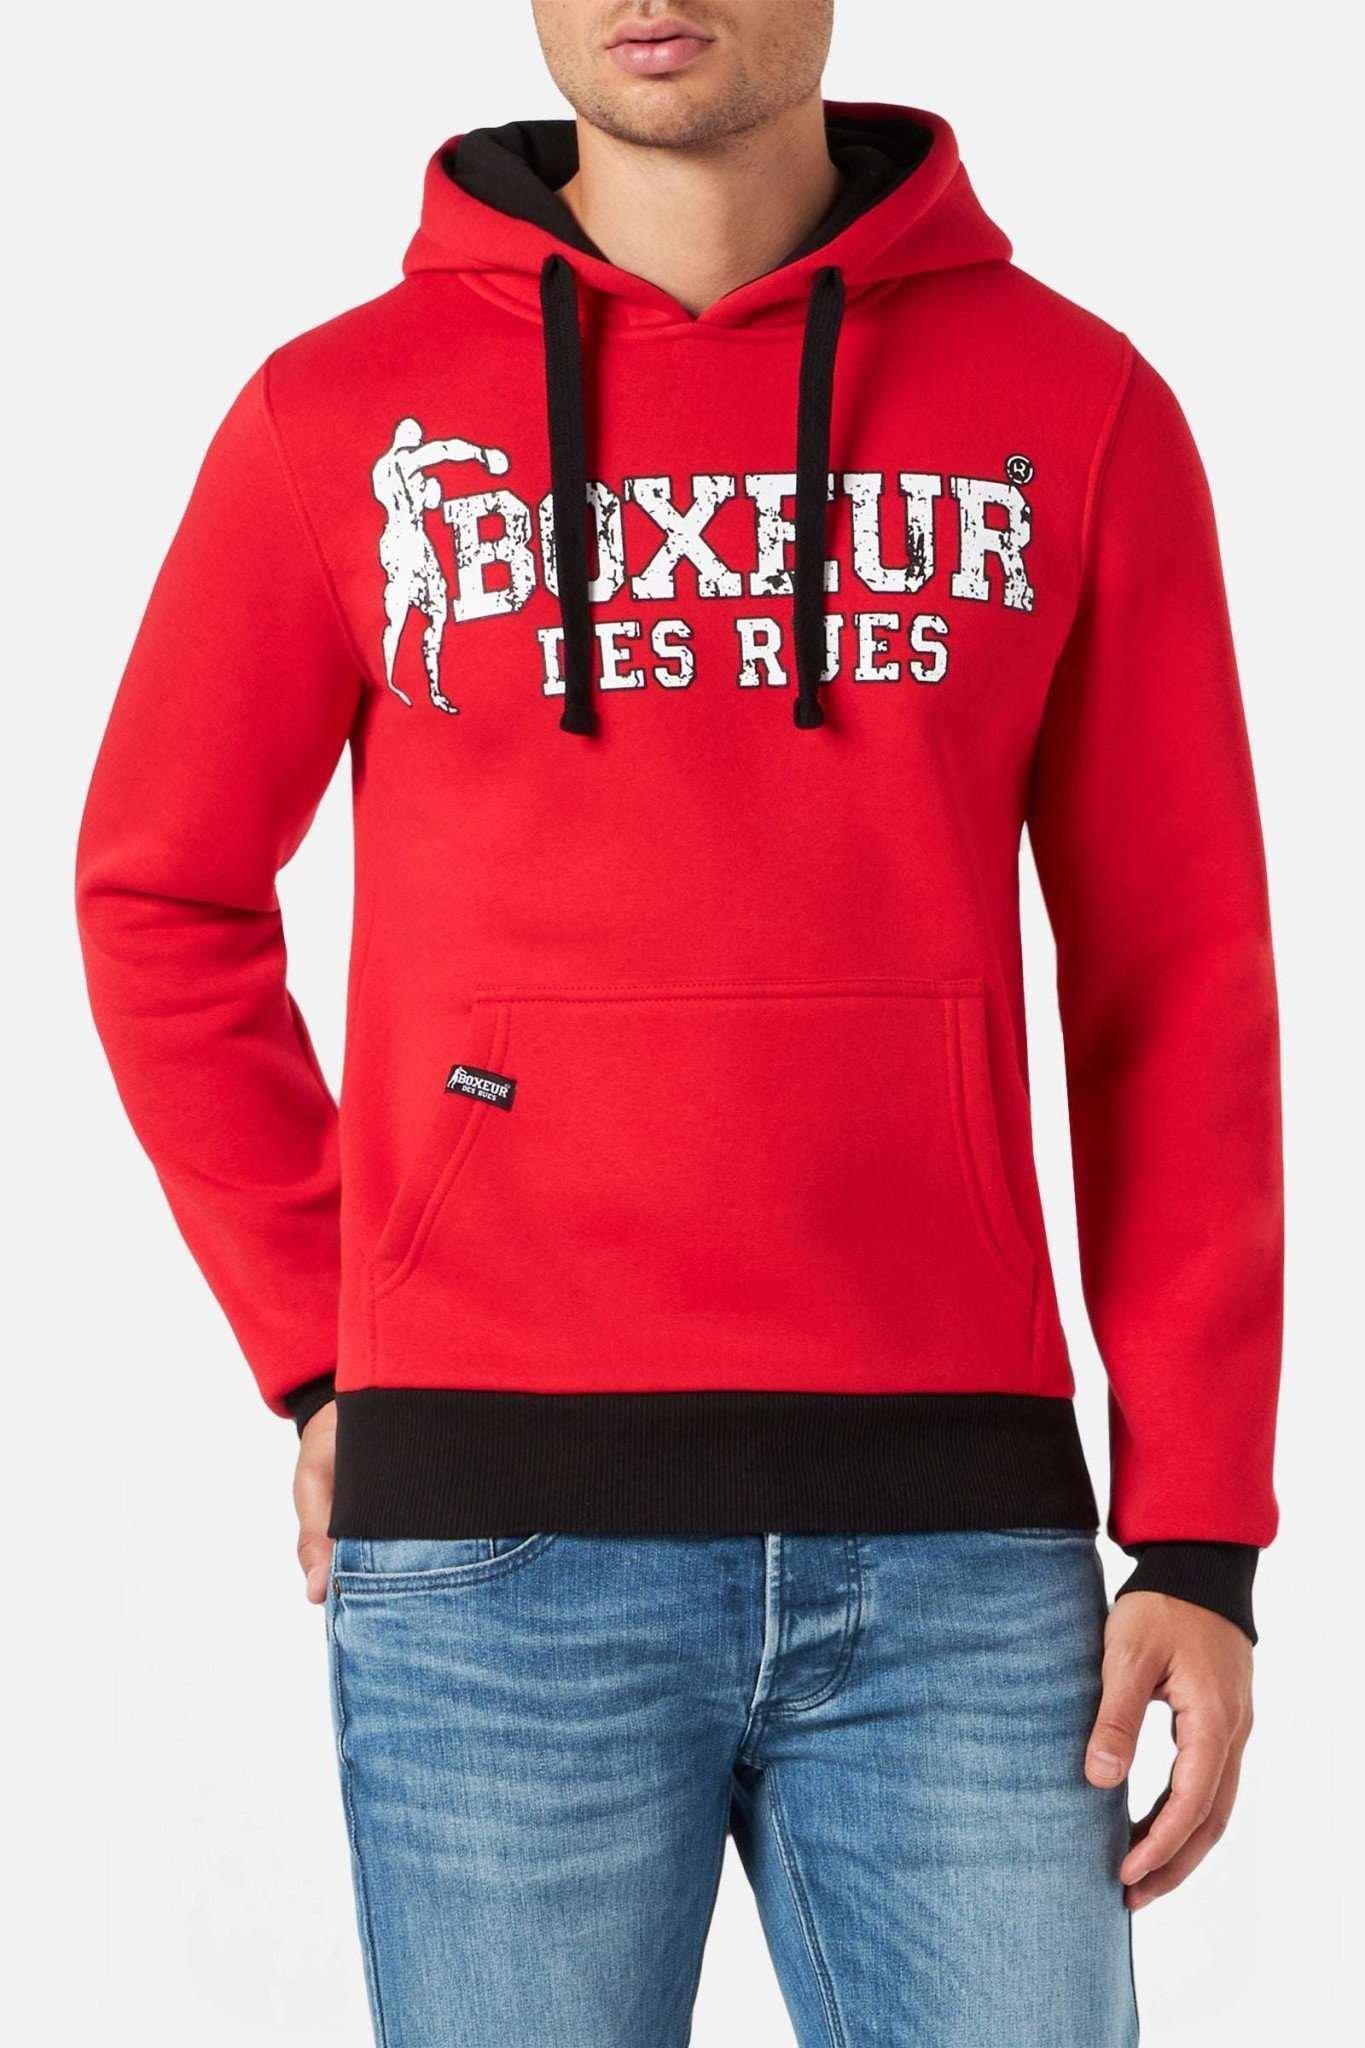 Sweatshirts Man Hoodie Sweatshirt Herren Rot Bunt S von BOXEUR DES RUES